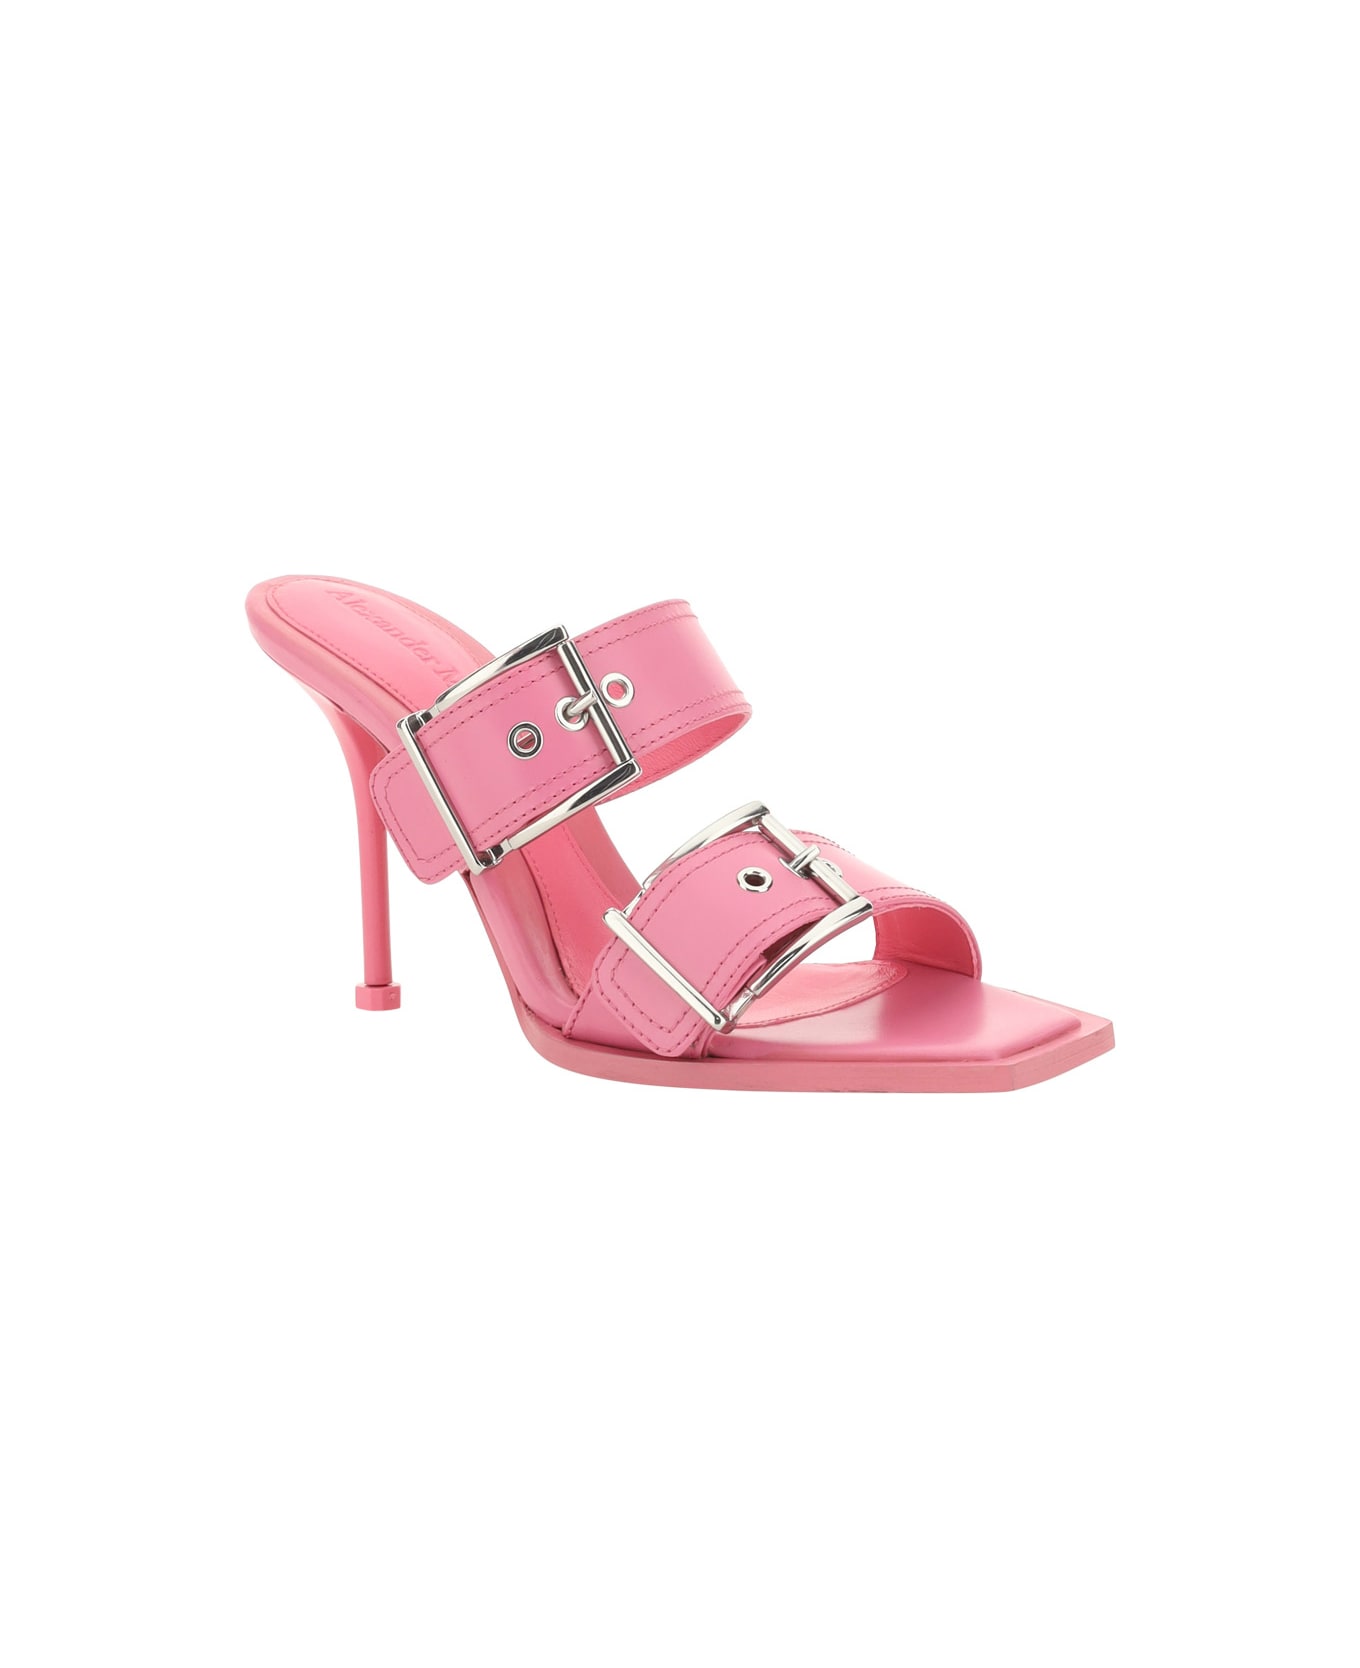 Alexander McQueen Sandals - Sugar Pink/silver